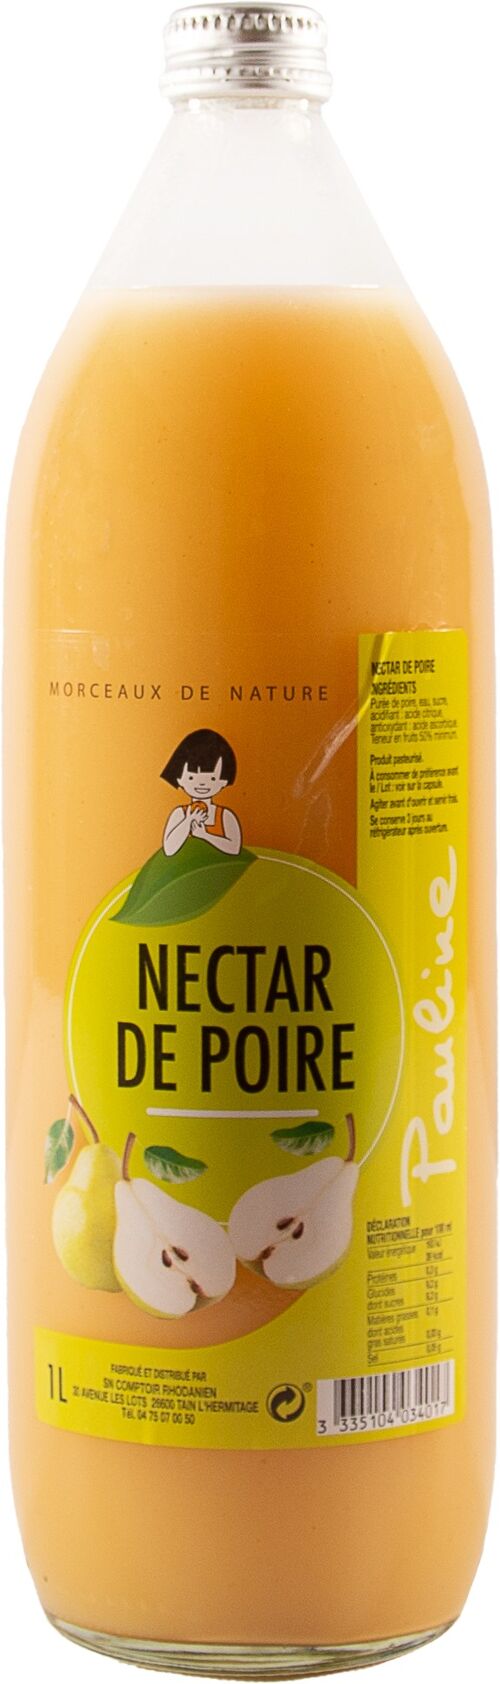 Nectar de poire 1L - PAULINE